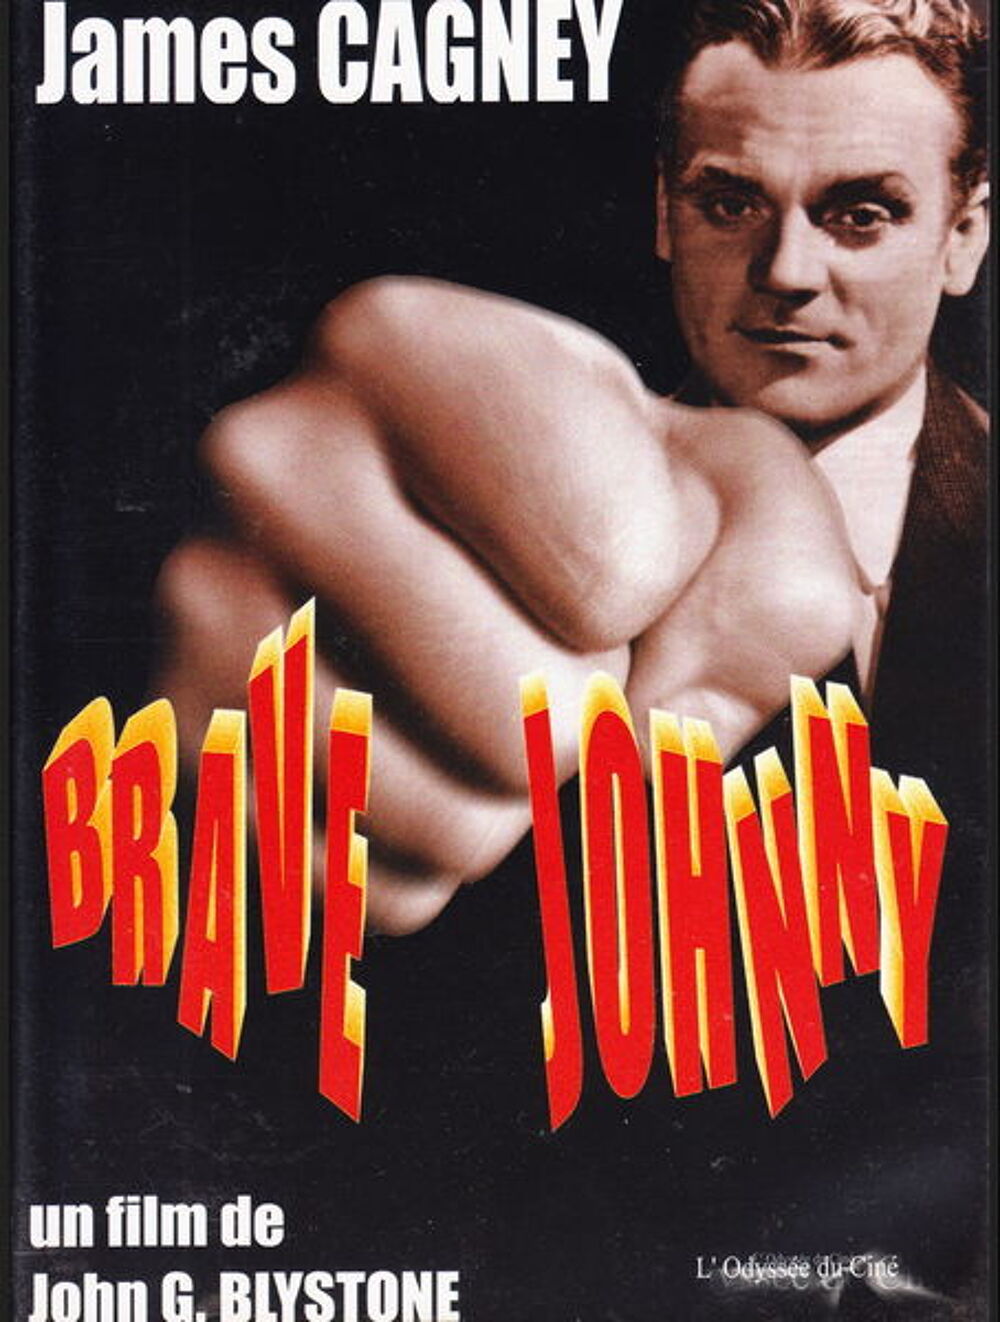 DVD Brave Johnny
DVD et blu-ray